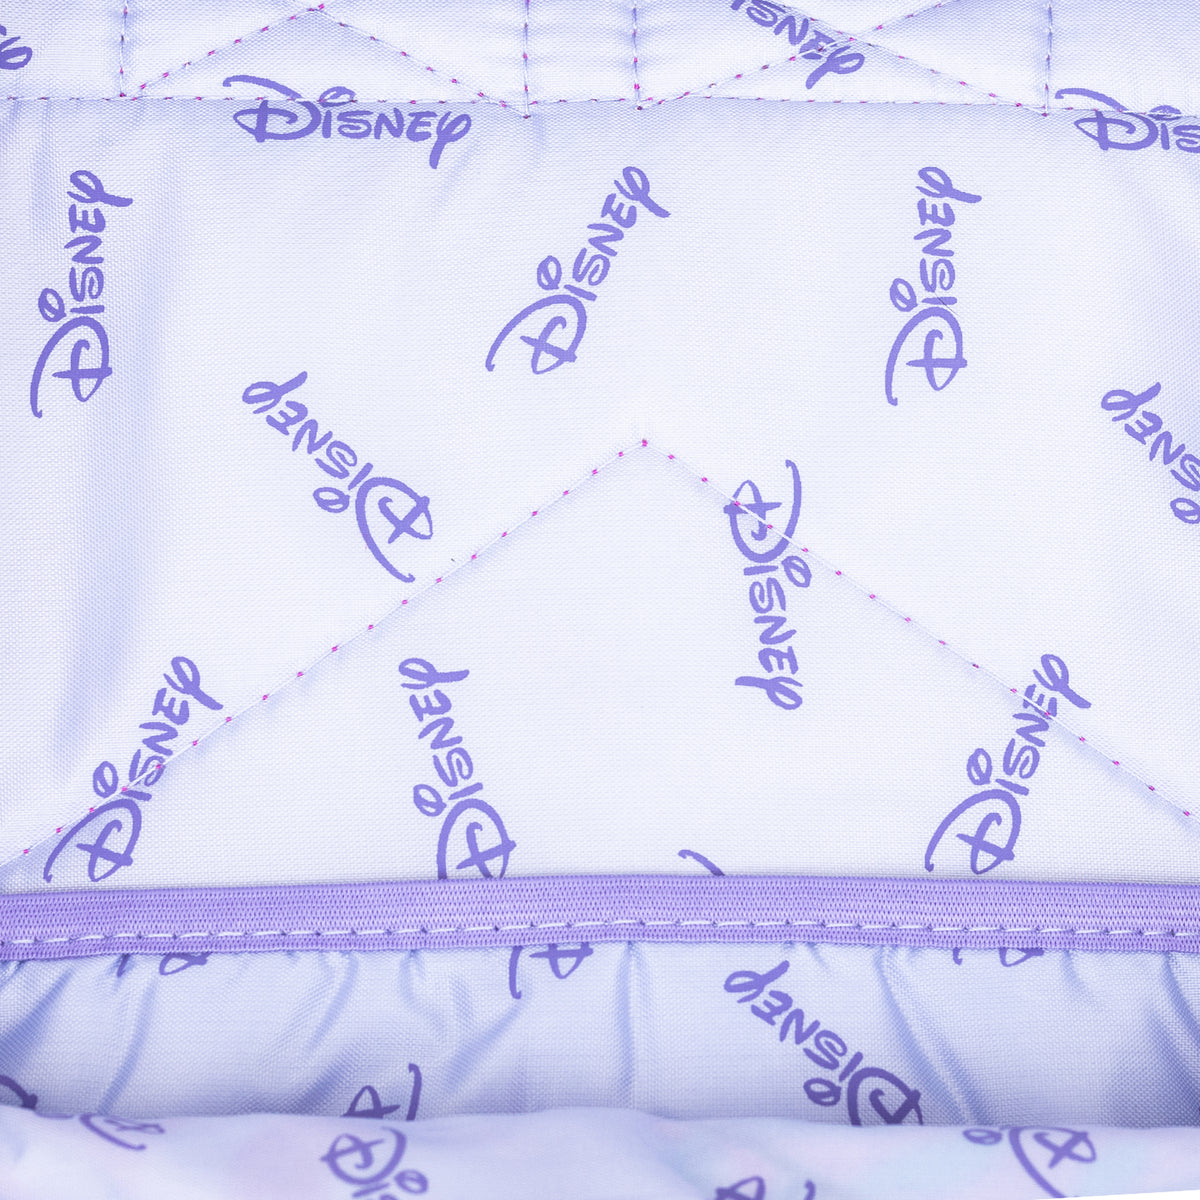 Disney Tinker Bell Never Grow Up 17&quot; Full Size Nylon Backpack